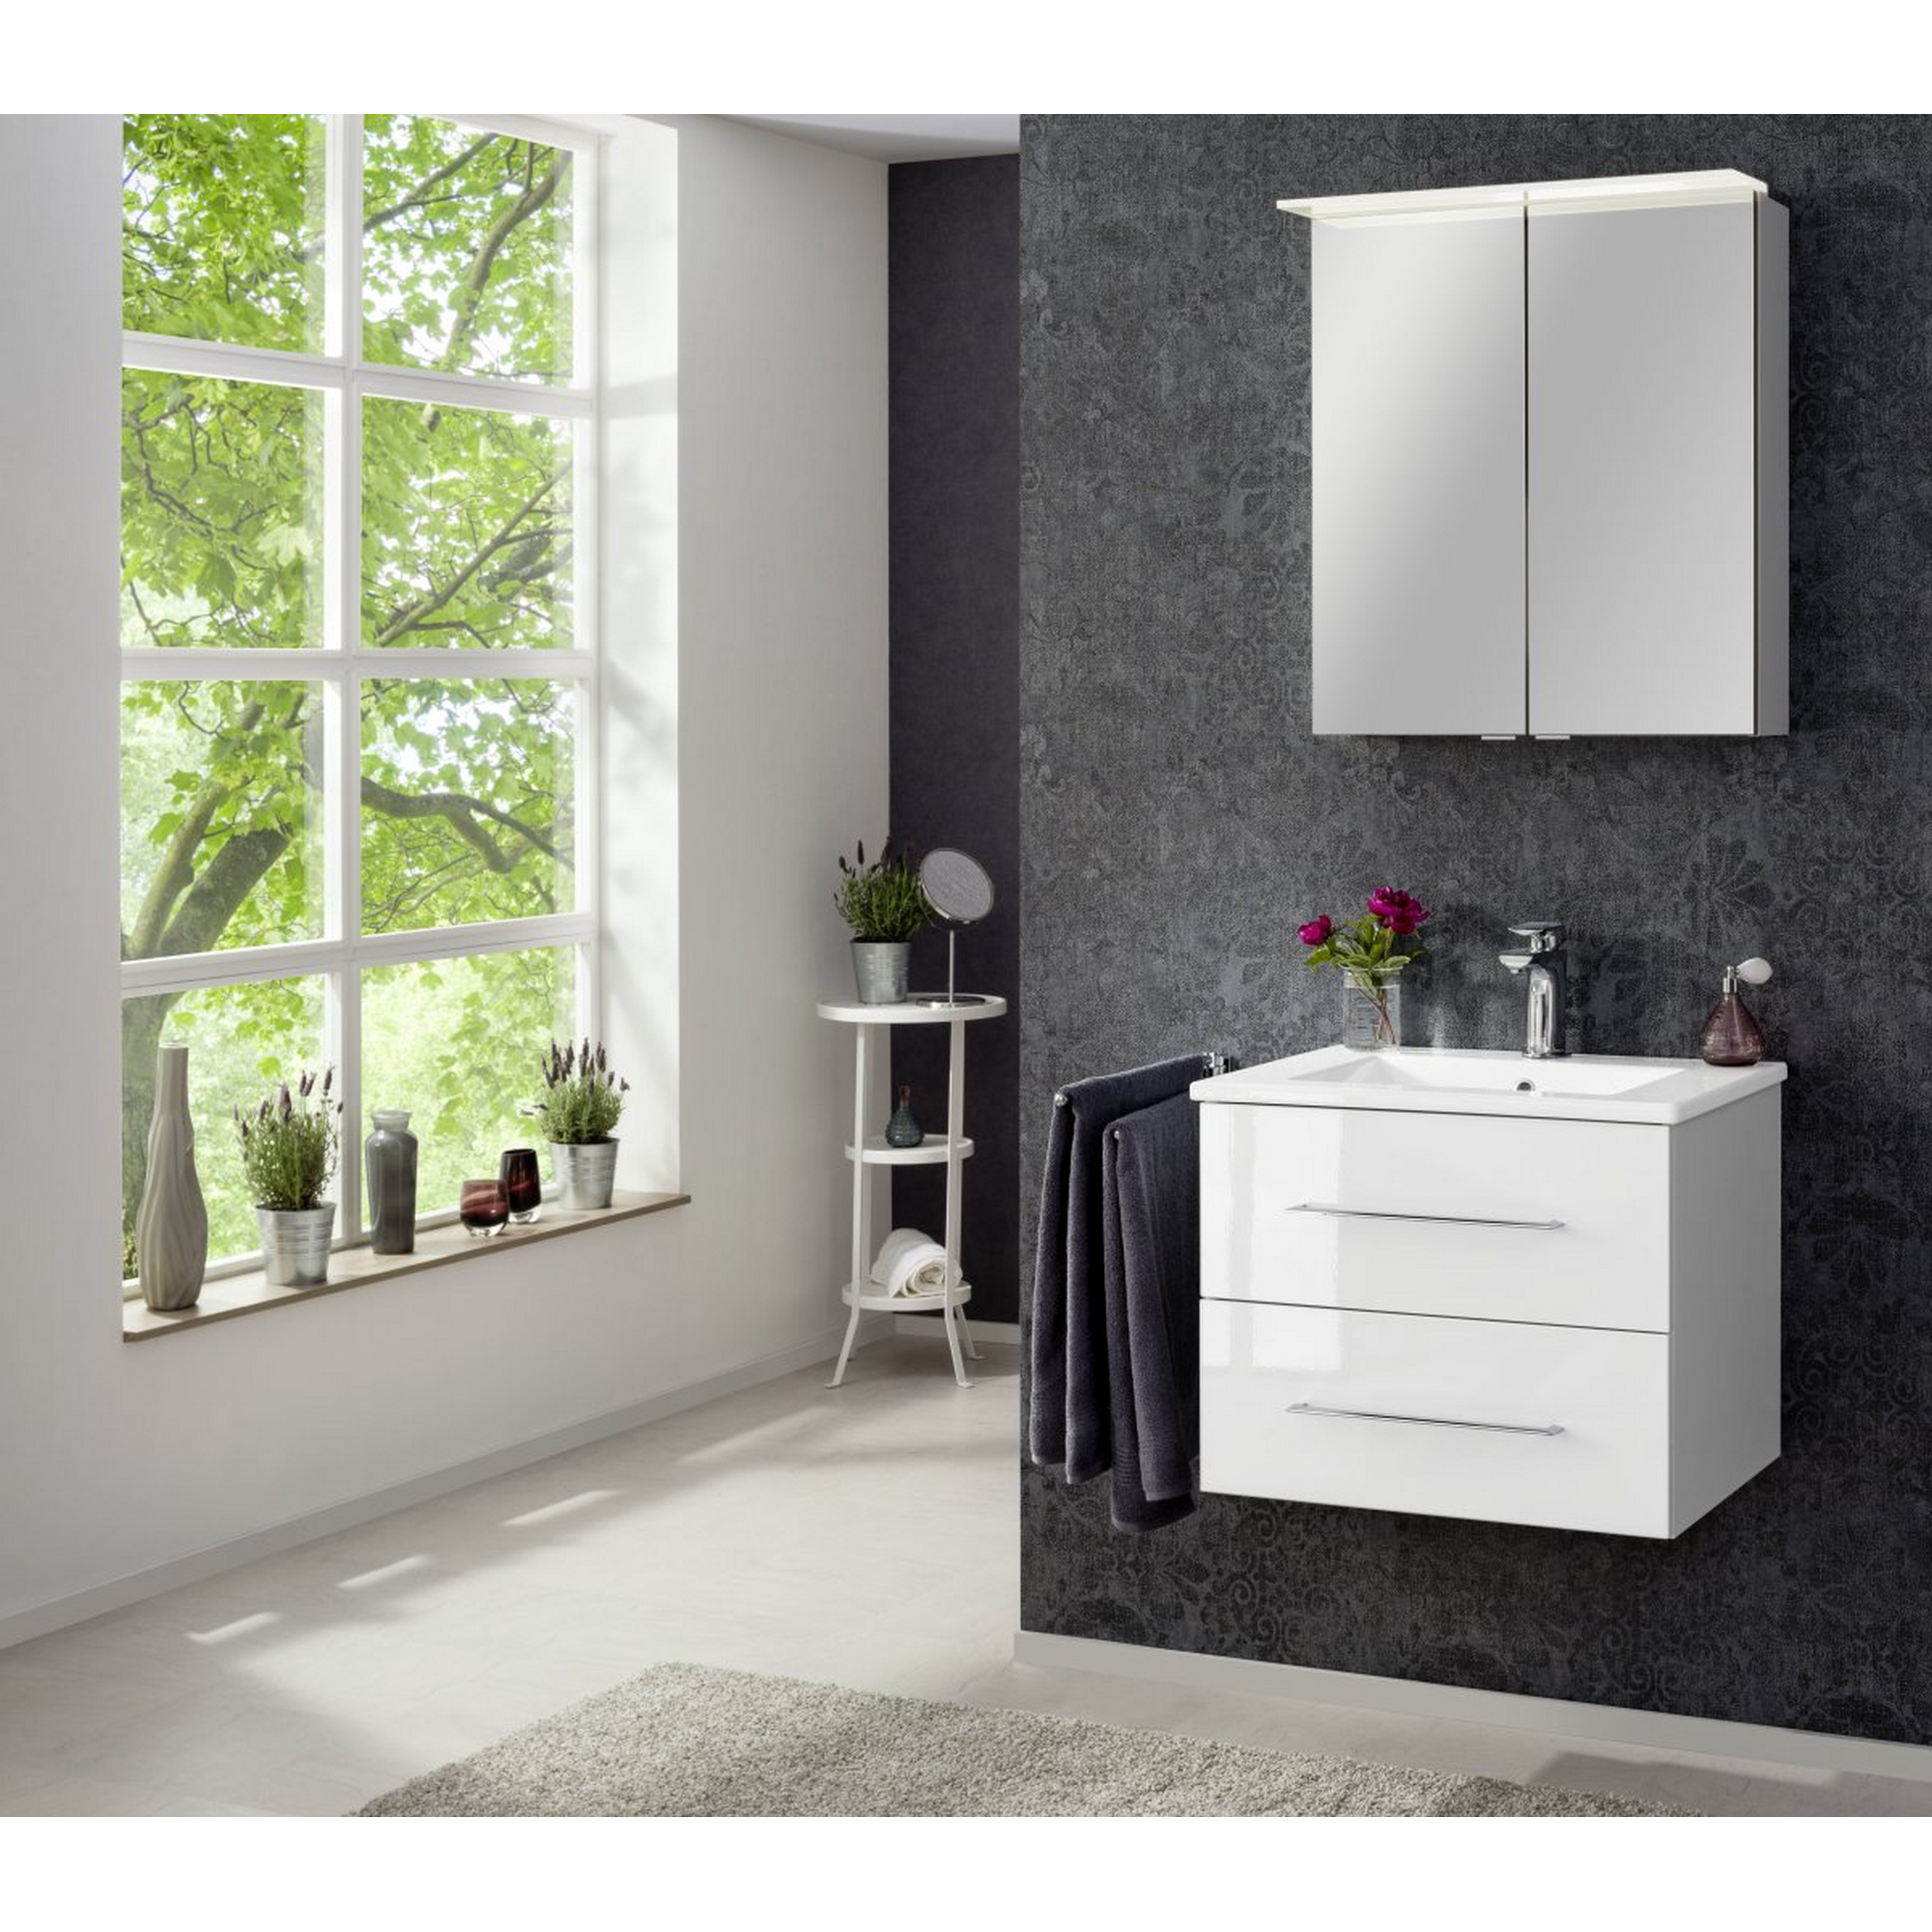 Waschbecken mit Unterschrank 'B.Perfekt' weiß 62 x 51 x 48 cm + product picture